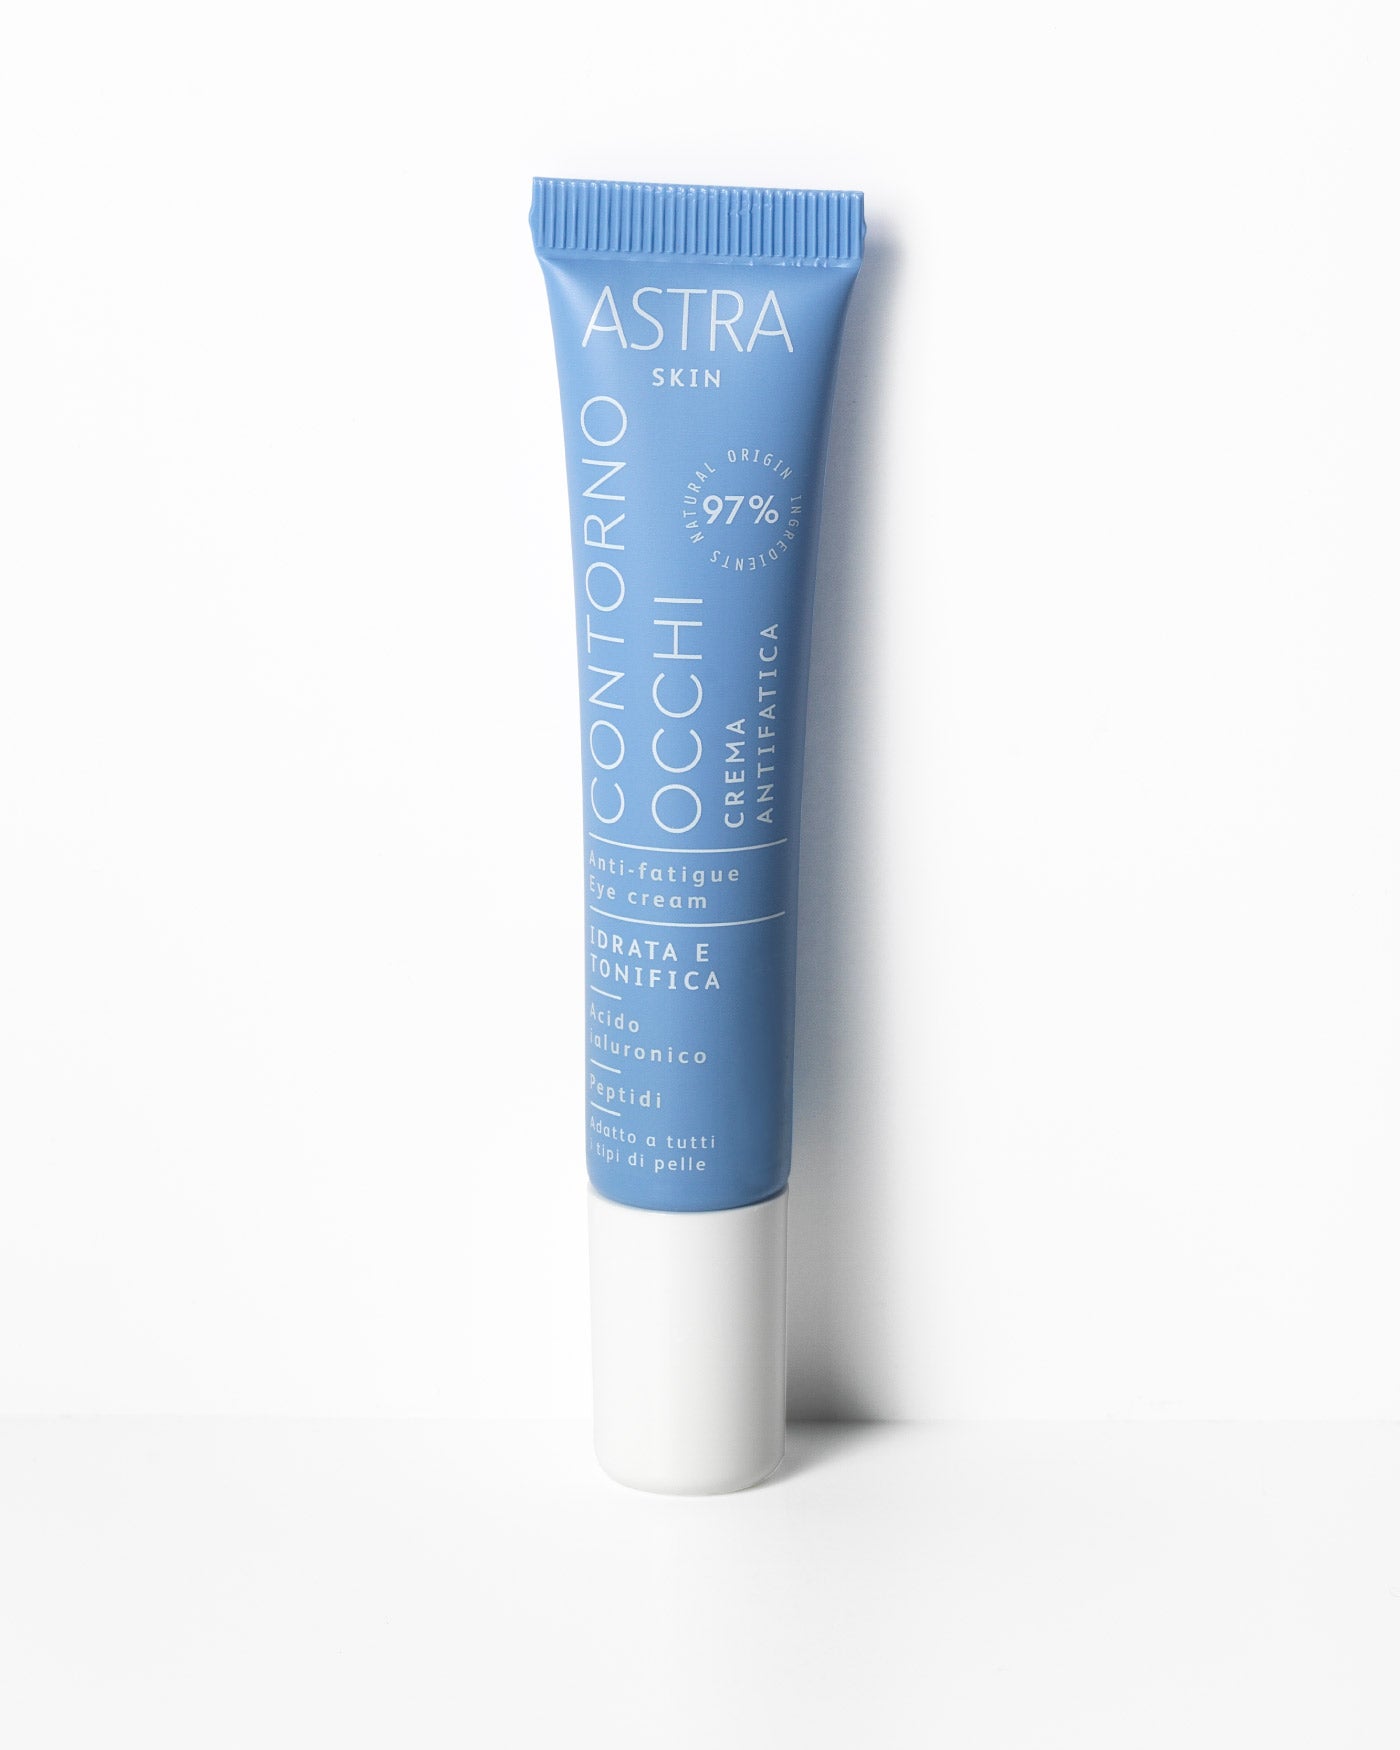 CONTORNO OCCHI - Crema Antifatica Effetto Lifting - Set Skin - Pelle Disidratata e Sensibile - Astra Make-Up